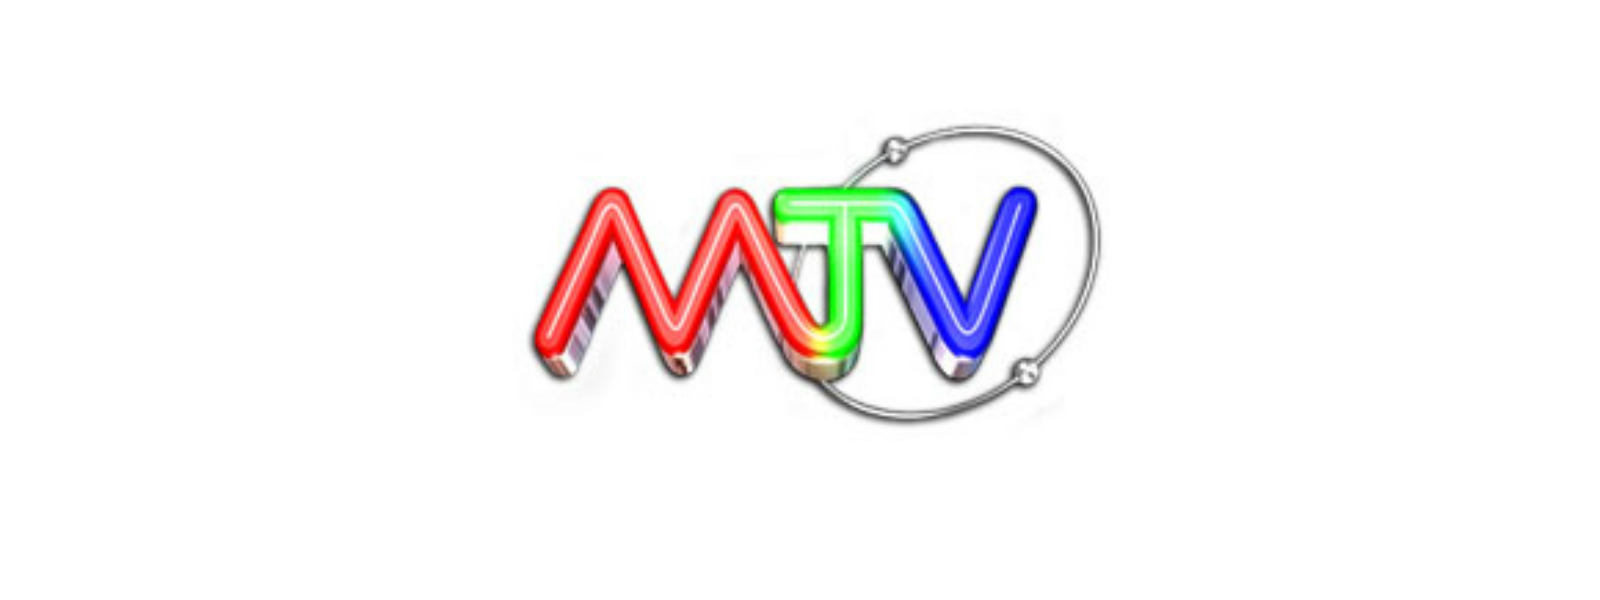 SL vs ENG තරගාවලියේ විකාශන අයිතිය MTV ආයතනයට